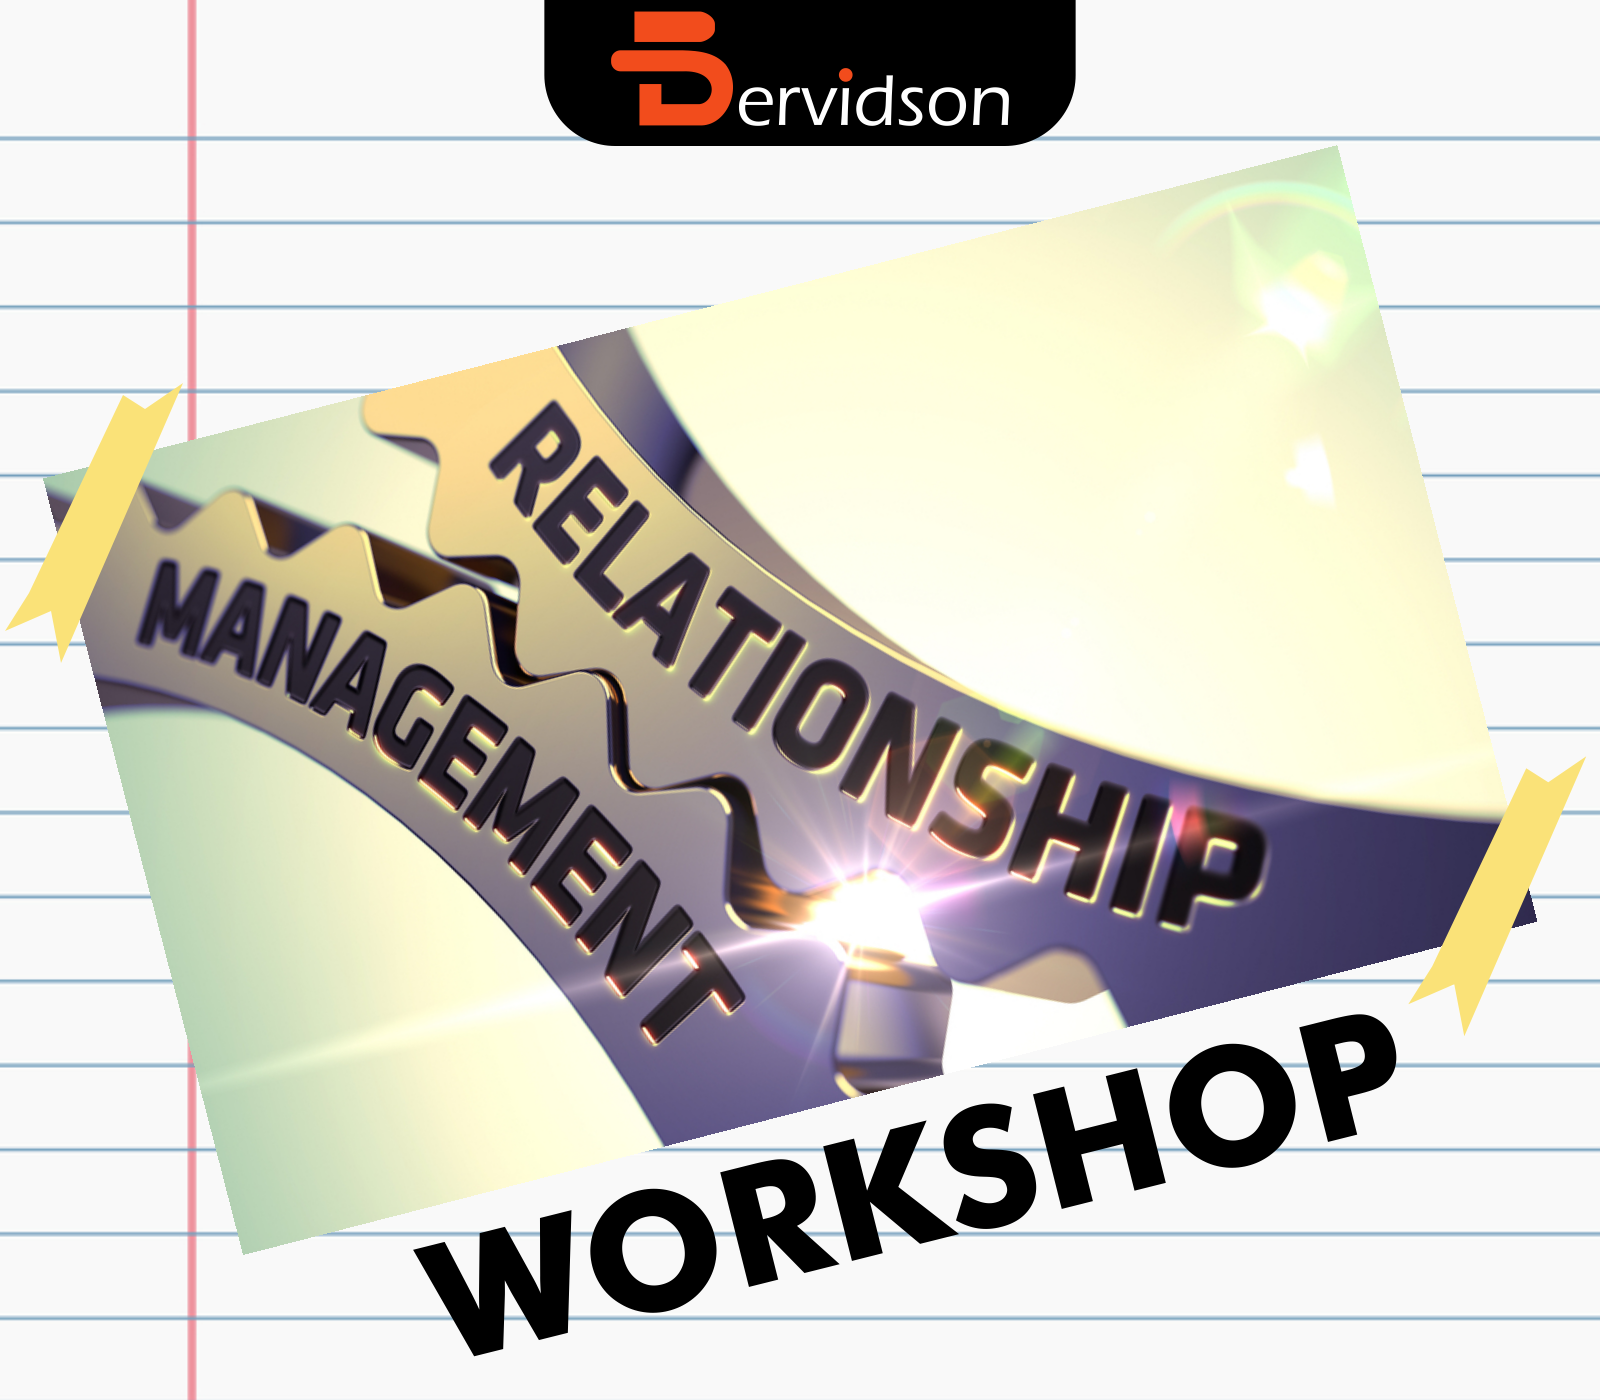 Relationship Management Workshop